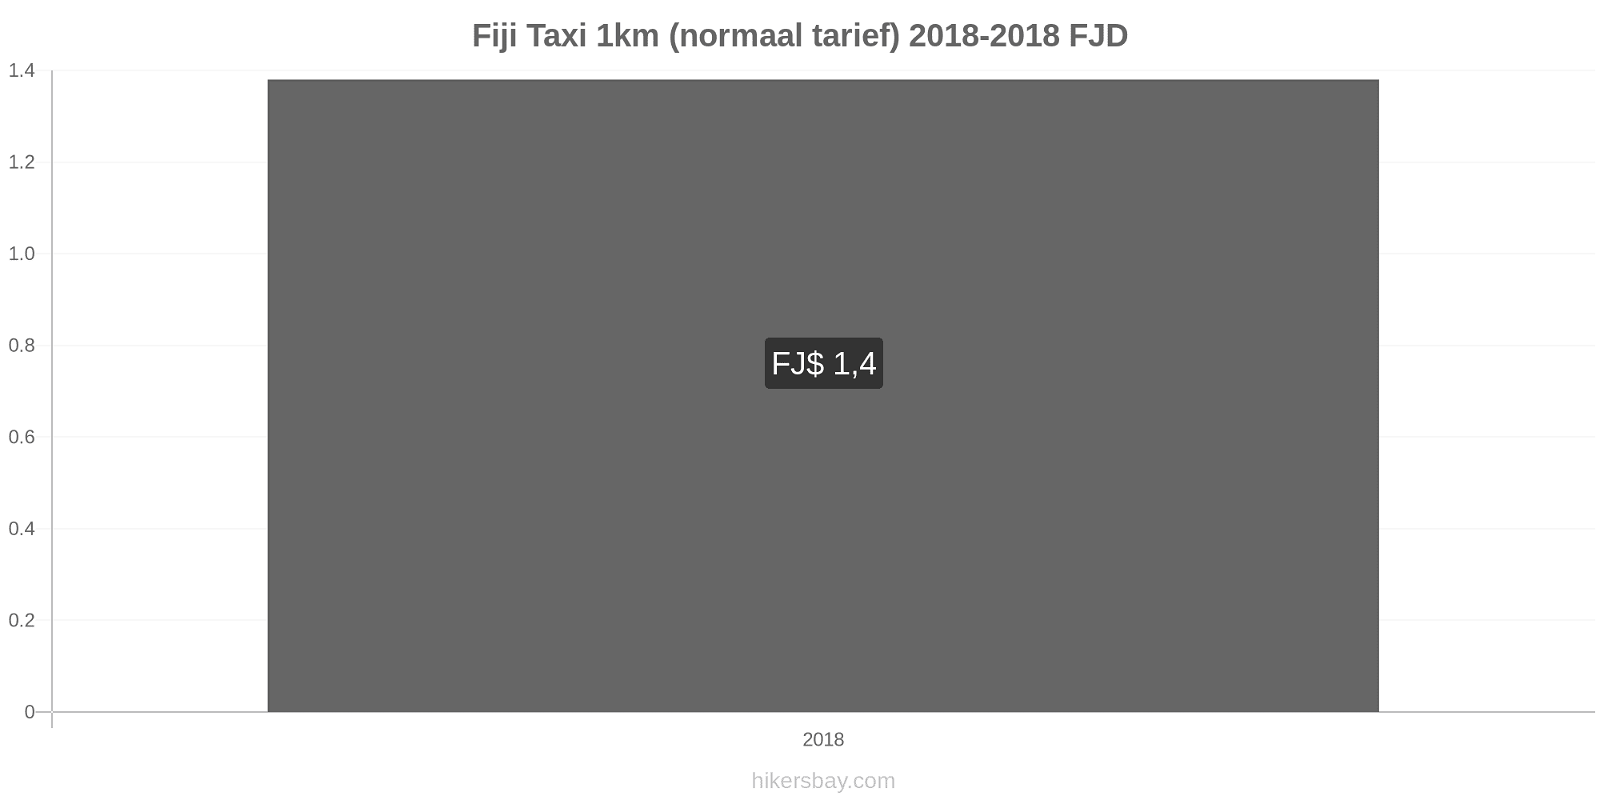 Fiji prijswijzigingen Taxi 1km (normaal tarief) hikersbay.com